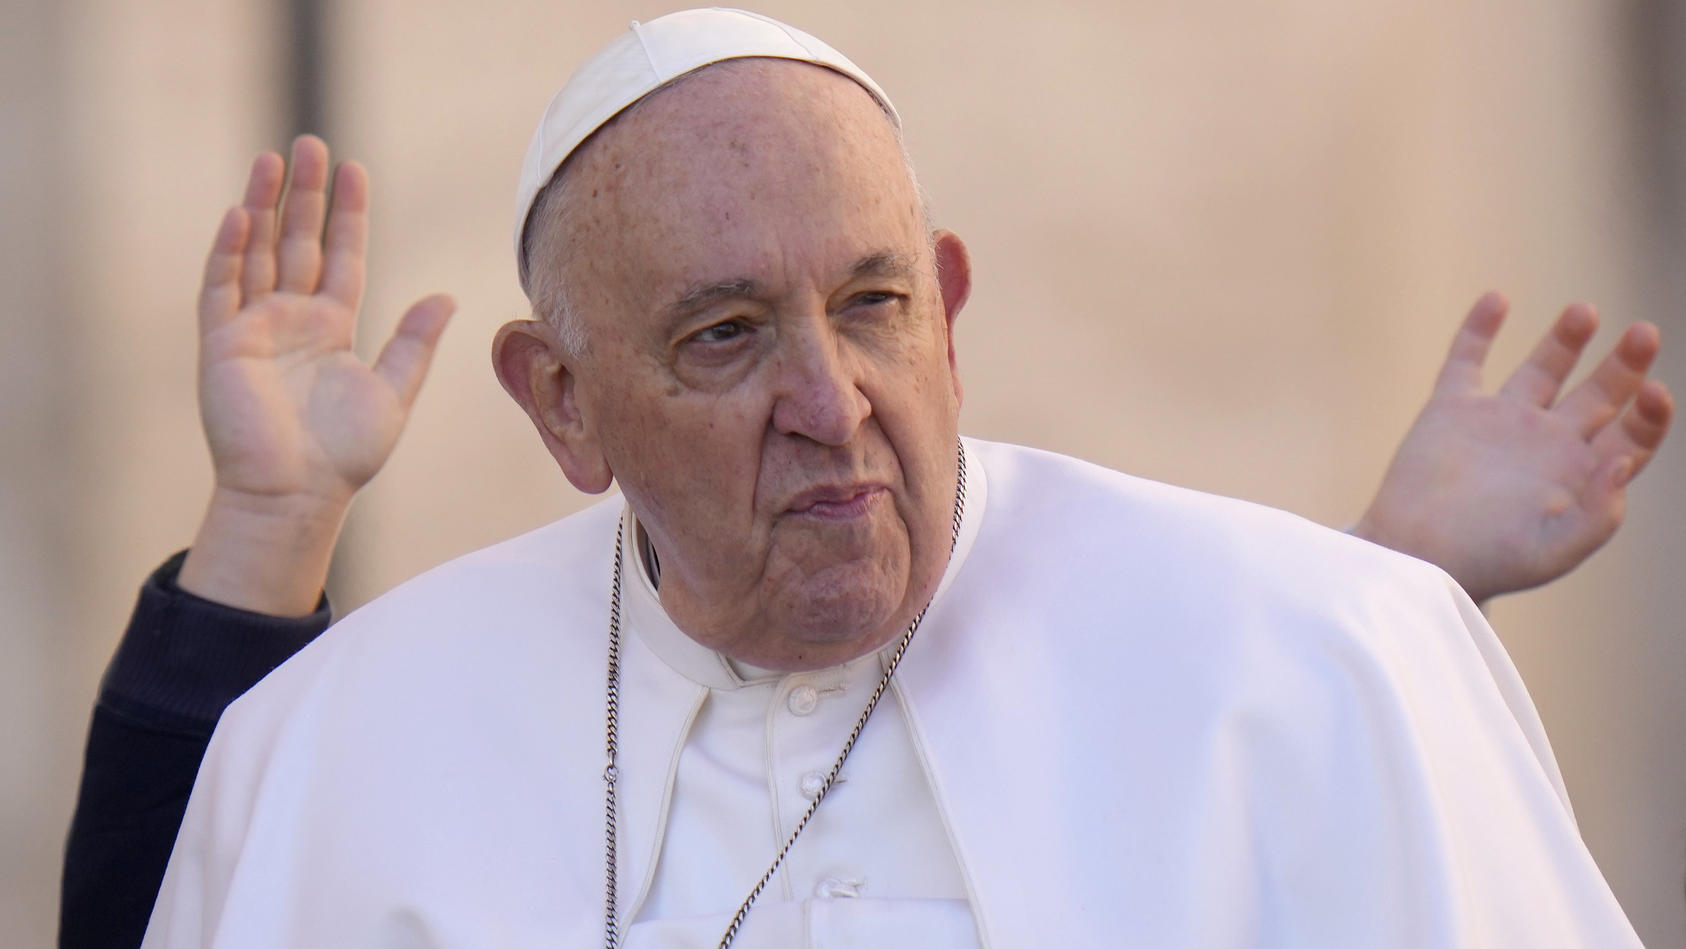 Papst aus Krankenhaus entlassen - Franziskus klopft schon wieder Sprüche